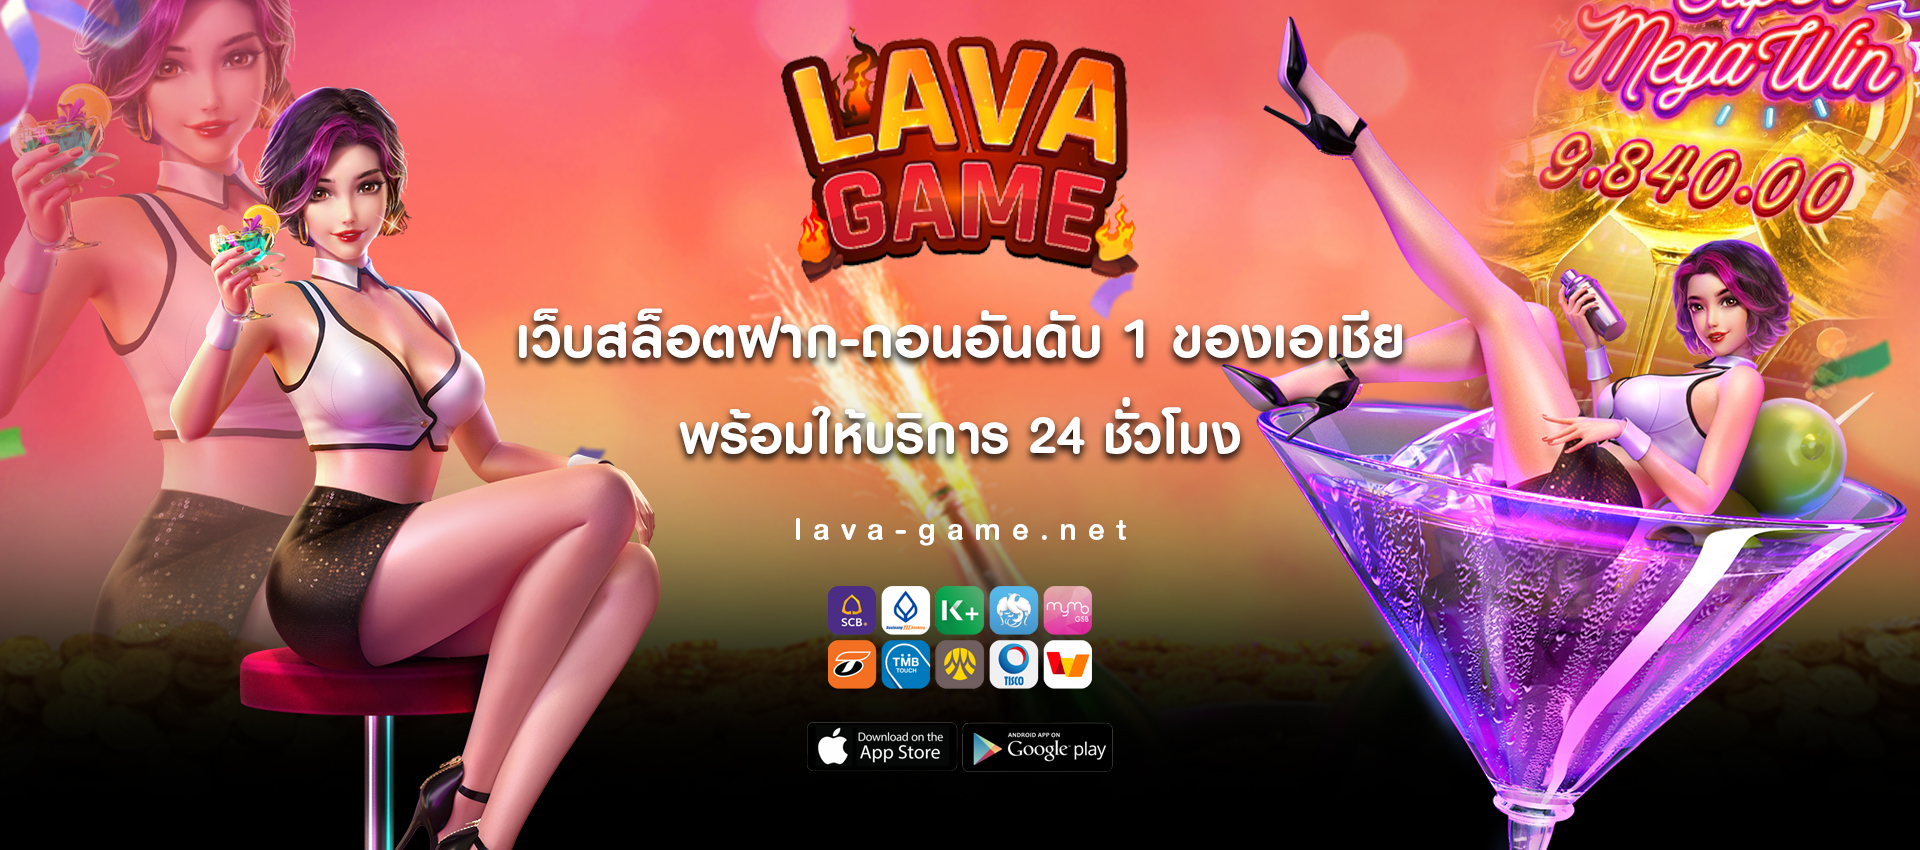 lava game สล็อตเว็บตรงอันดับ1